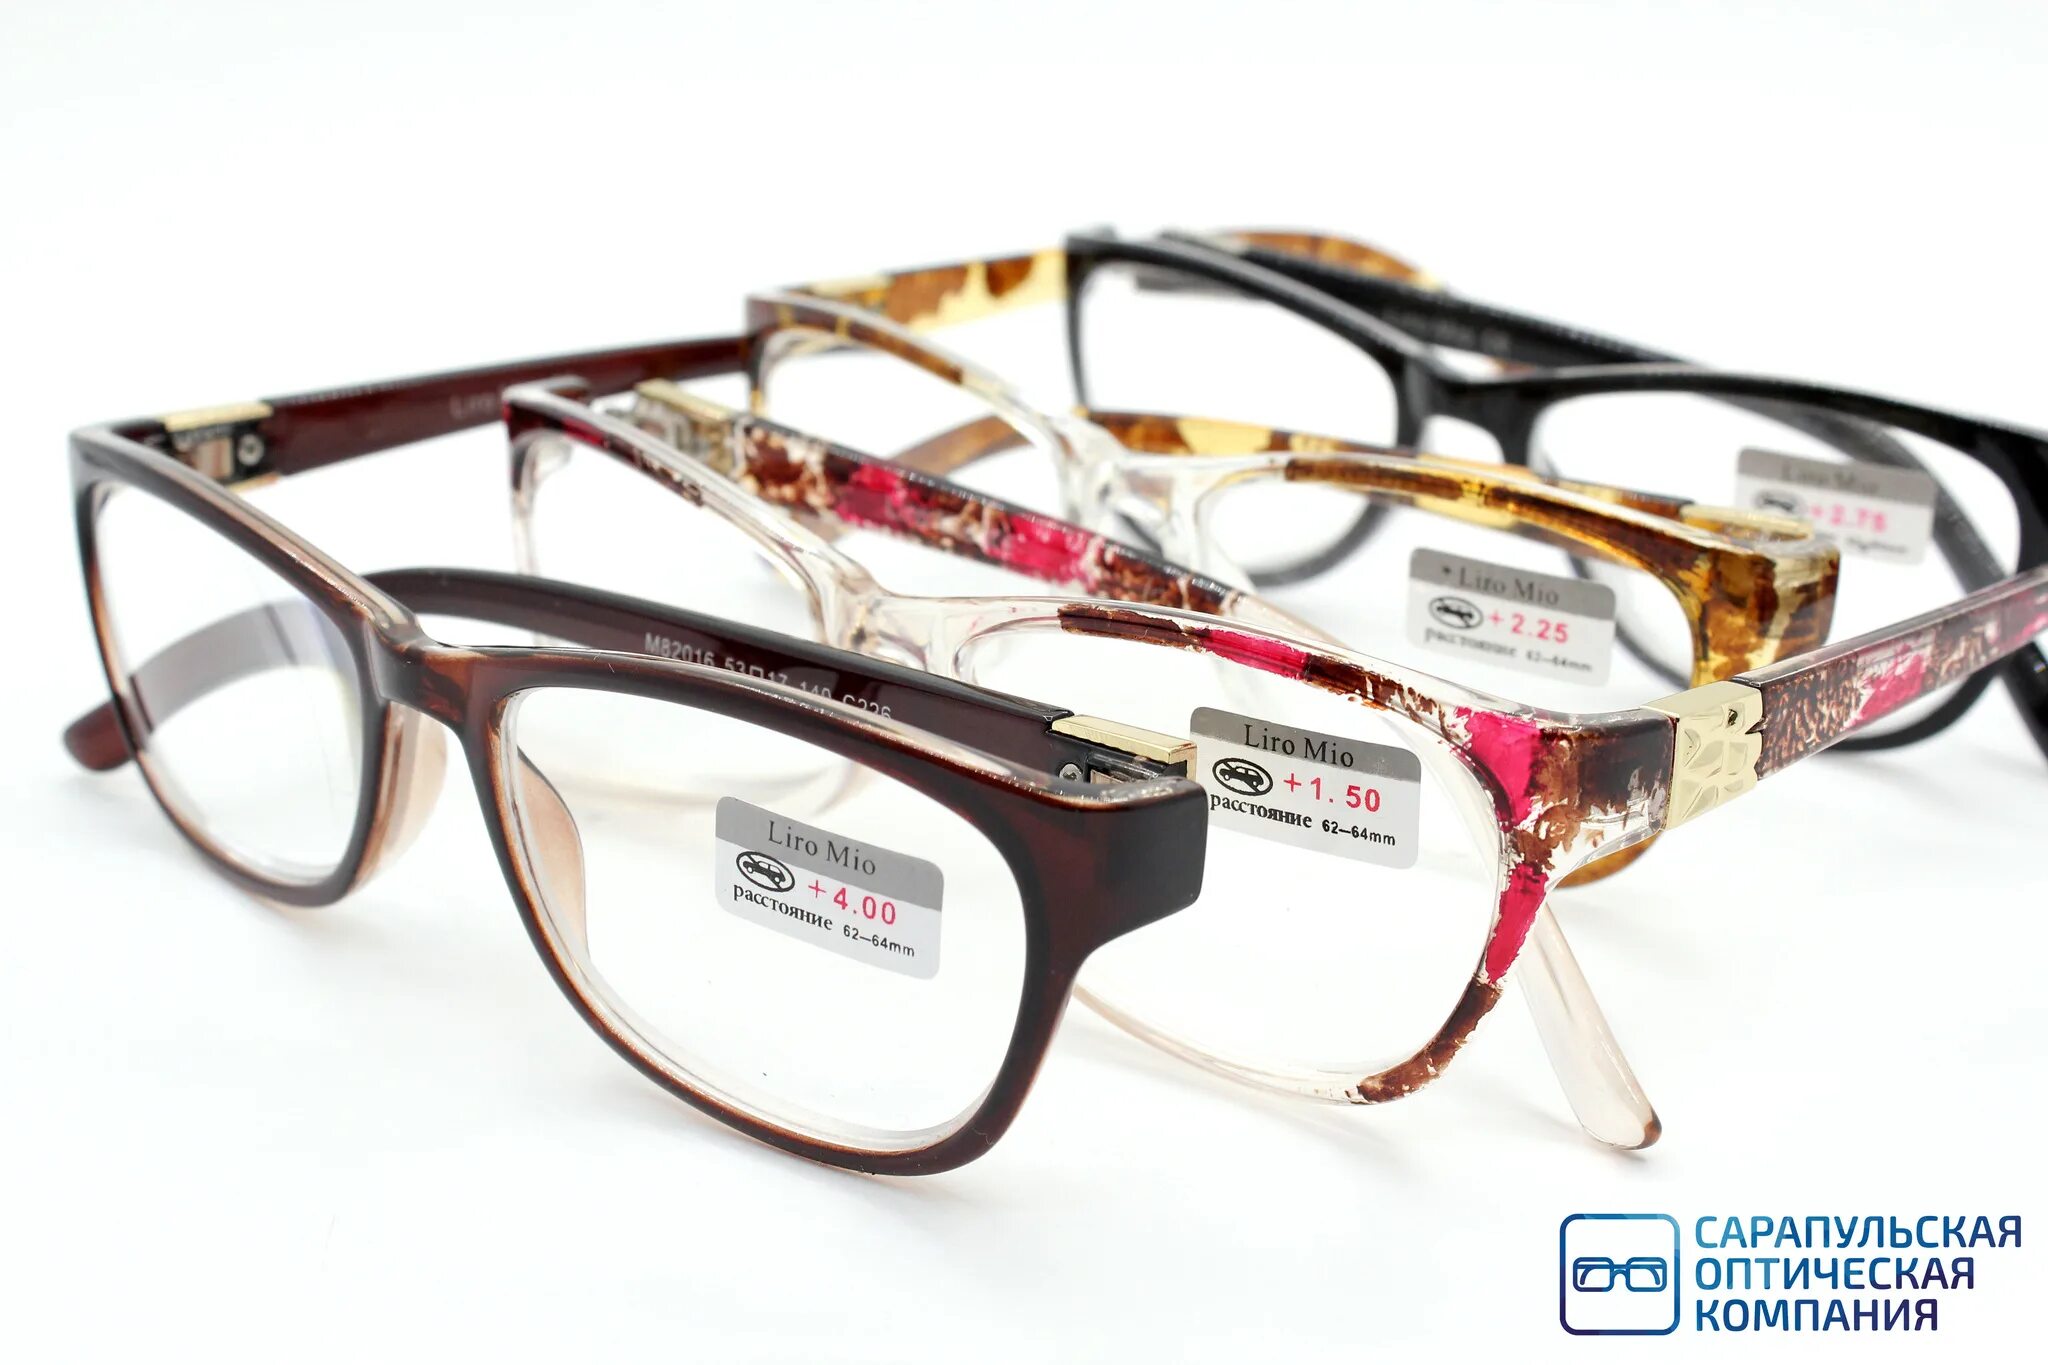 Готовые недорогие очки купить. Оправа Liro mio. Оптика очки. Оптические очки. Очки готовые.